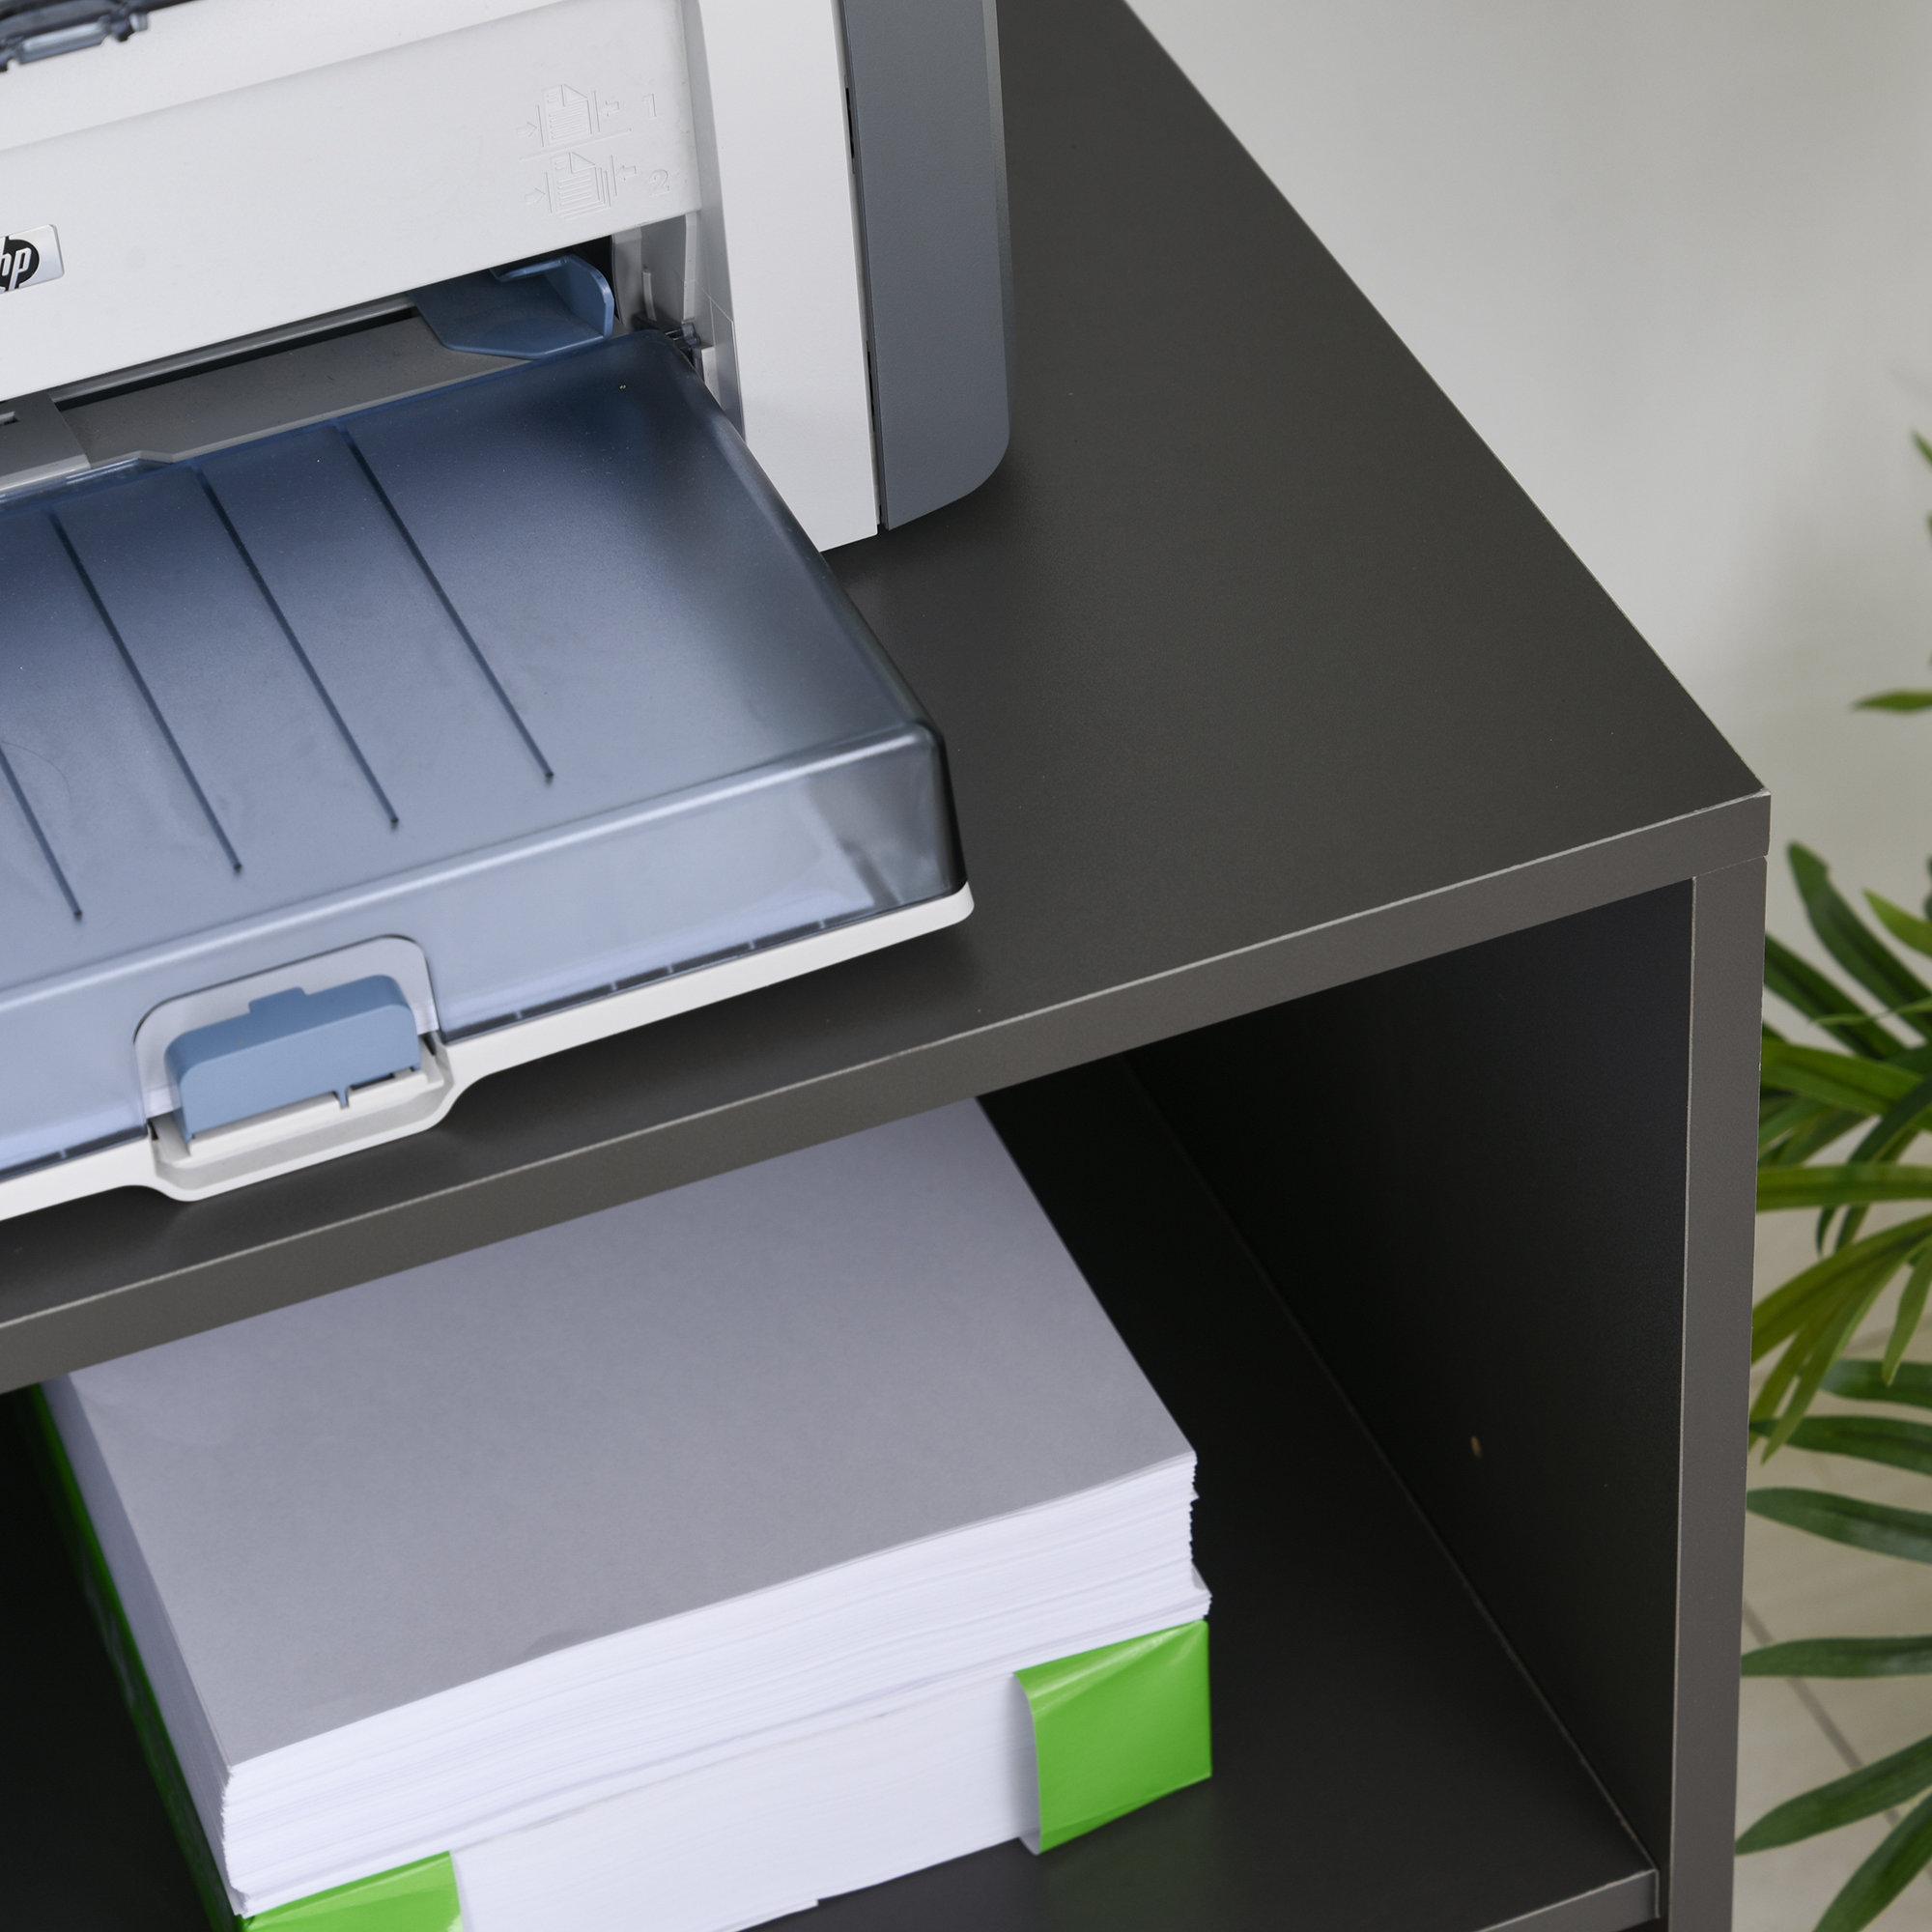 HOMCOM Support d'imprimante organiseur bureau caisson 3 tiroirs + 2 niches + grand plateau panneaux particules gris